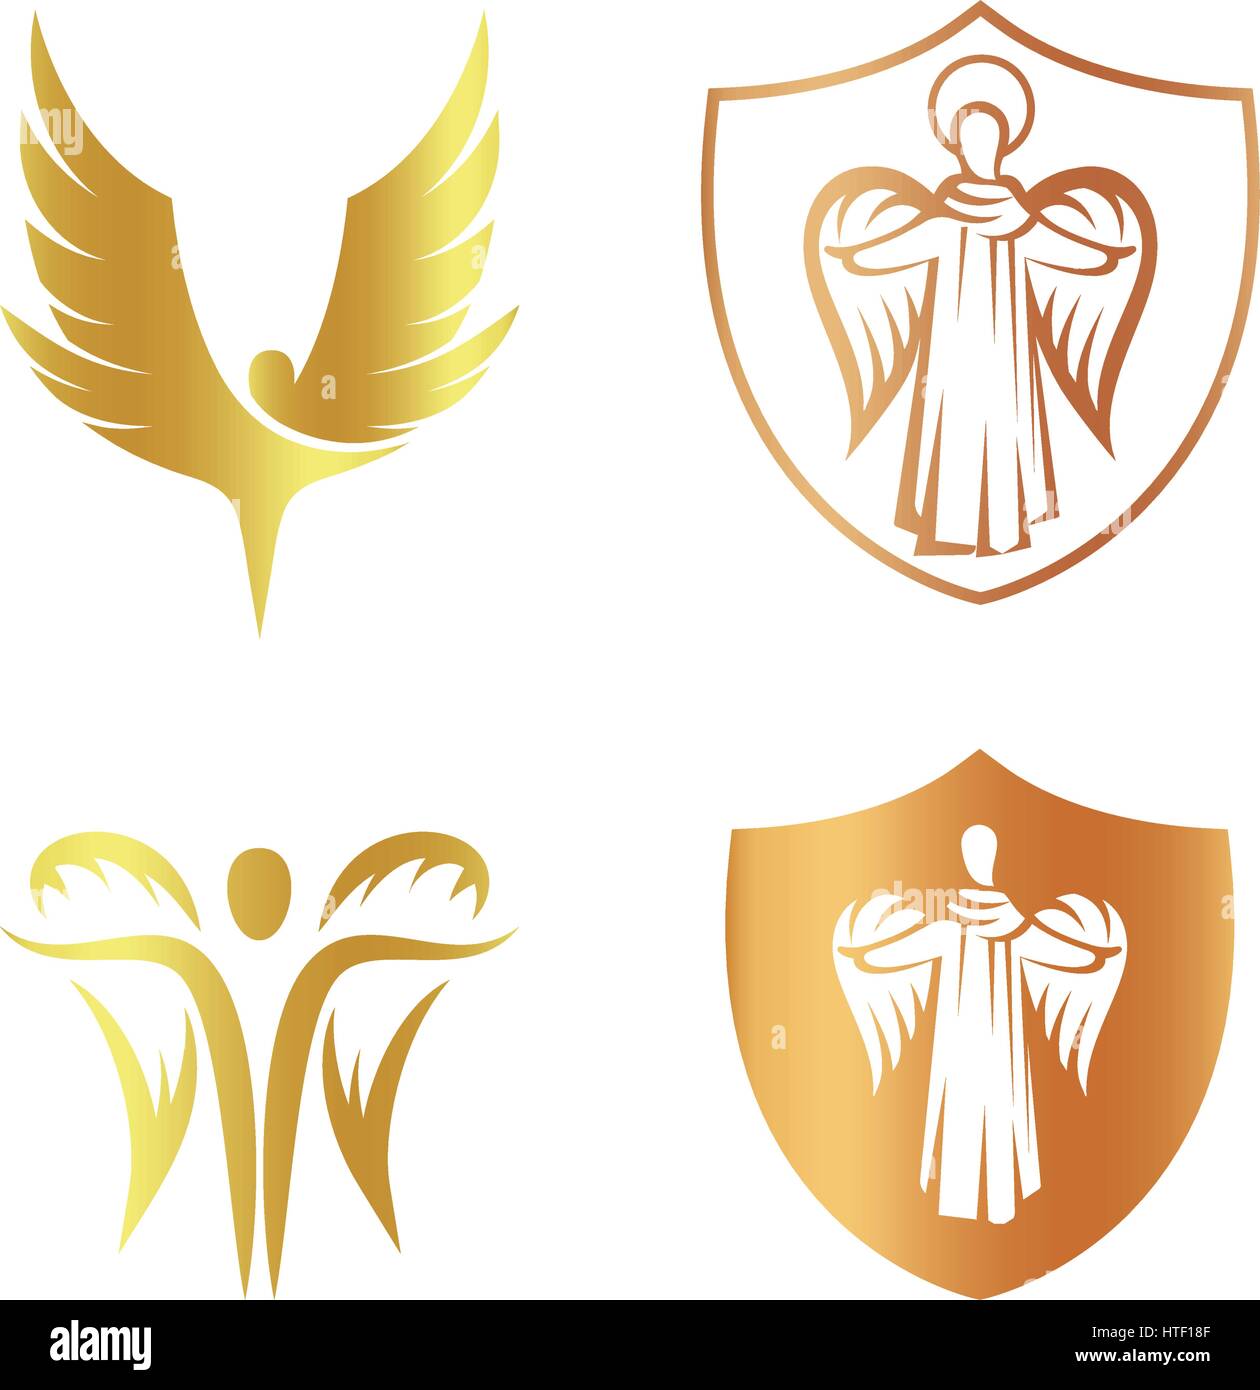 Isolierte goldene Farbe Engel Silhouette Logo Set, Schild mit religiösen Element Logo Kollektion, Arm mit Erzengel-Vektor-Illustrationen auf weißem Anstrich. Stock Vektor